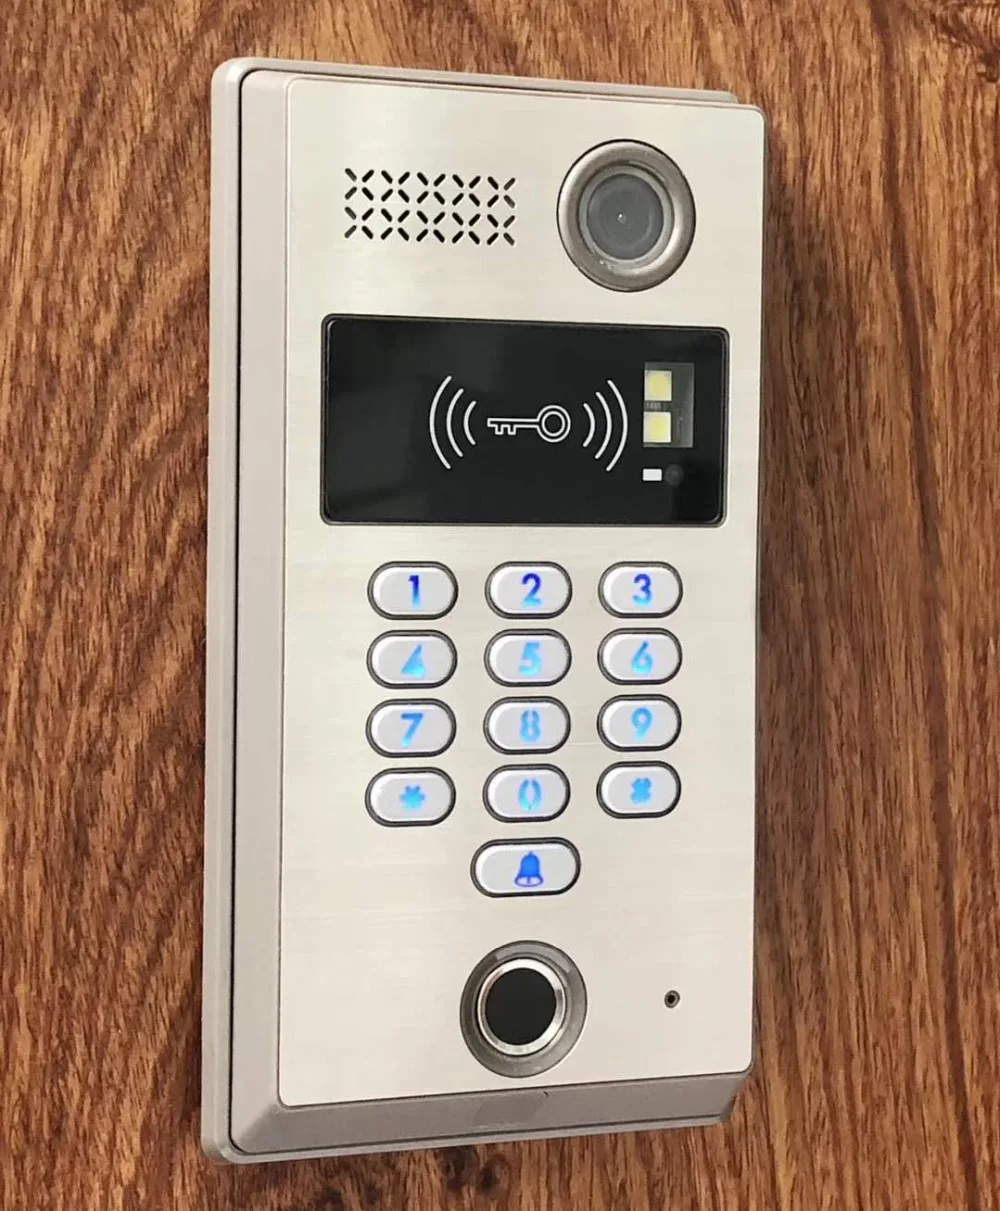 ZHUDELE Высокое качество домашней безопасности сенсорный ключ " видео домофон дверной звонок 700TVL ИК камера отпечатков пальцев/Пароль/ID карта